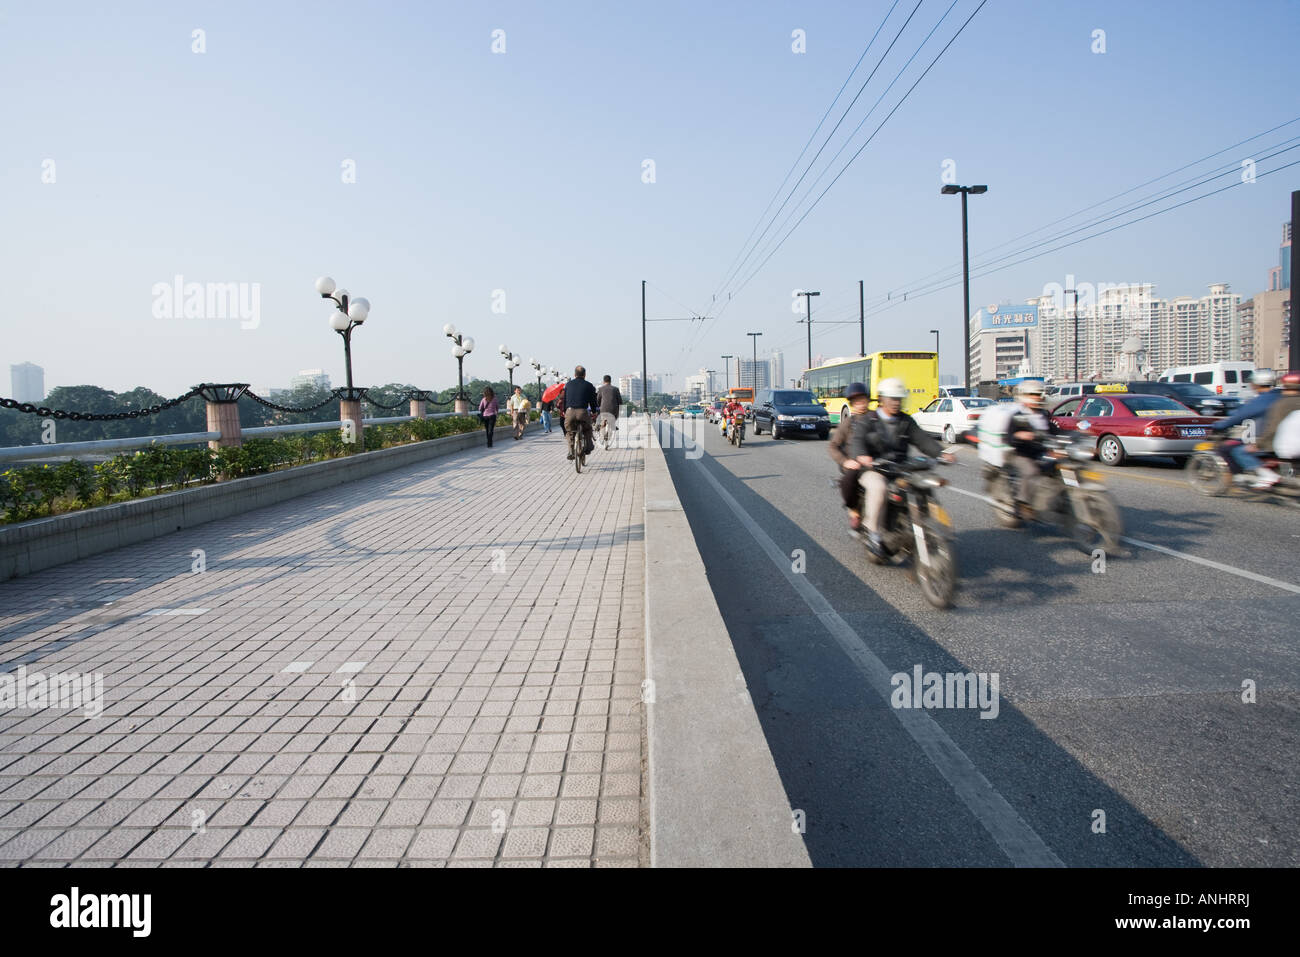 Pedestrian lane next to city thoroughfare, China Stock Photo